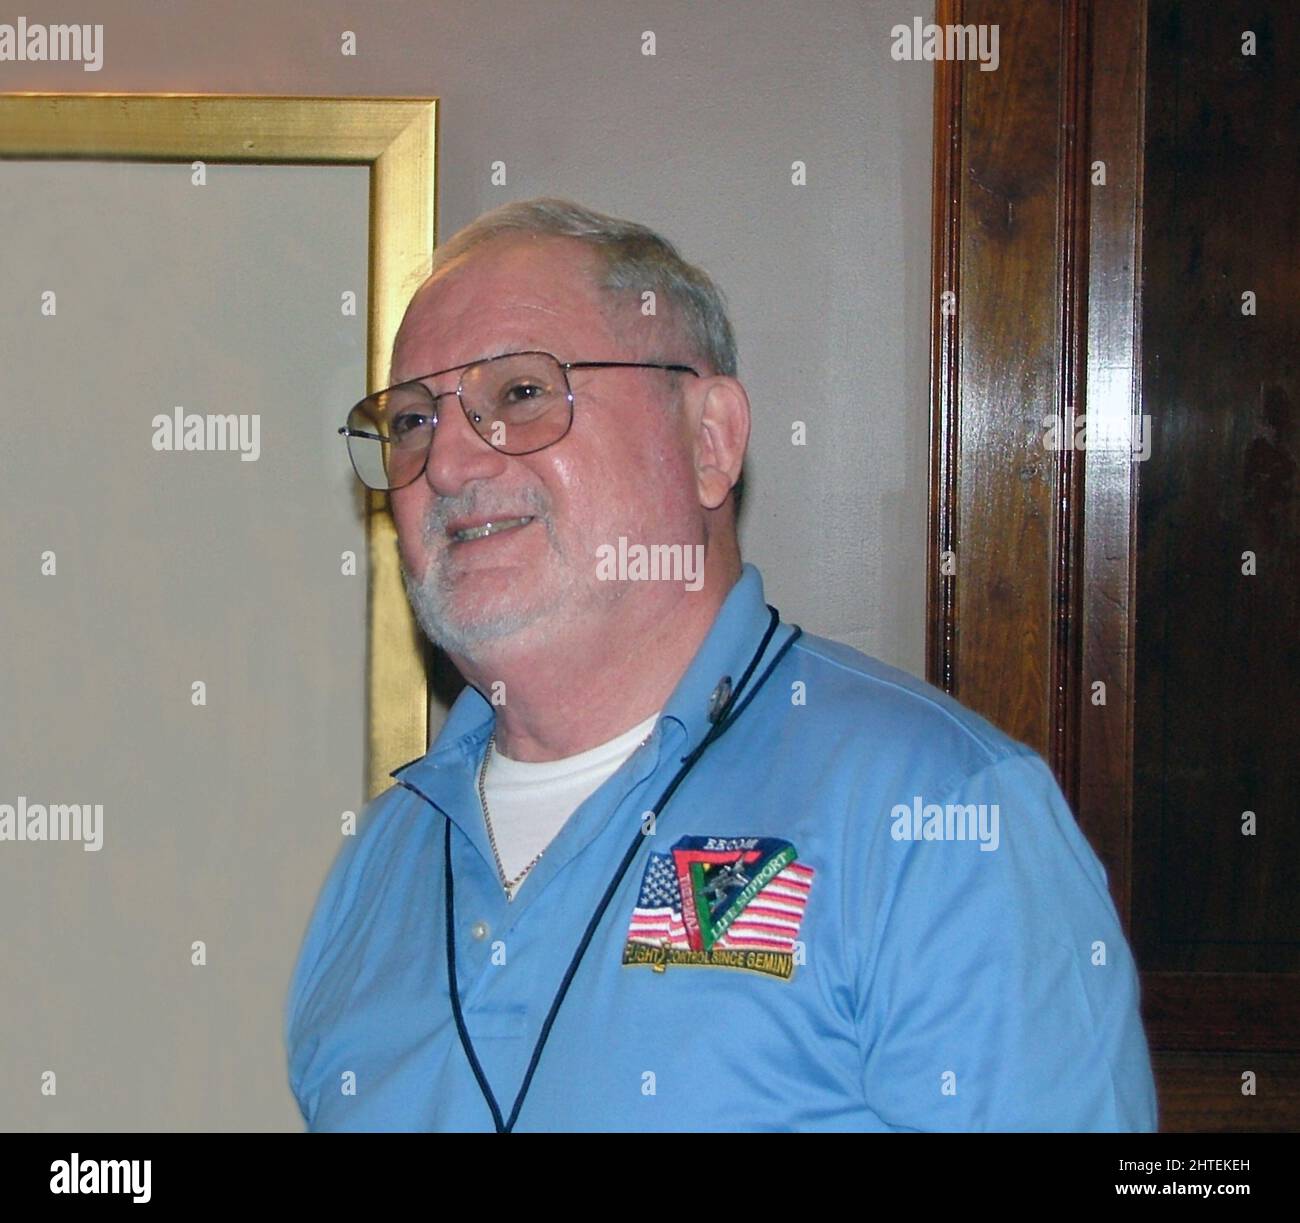 SY Liebergot (Seymour Liebergot) è un controllore di volo della NASA in pensione, per il programma Apollo della NASA e parte del team che ha guidato Apollo 13 di nuovo sulla Terra Foto Stock